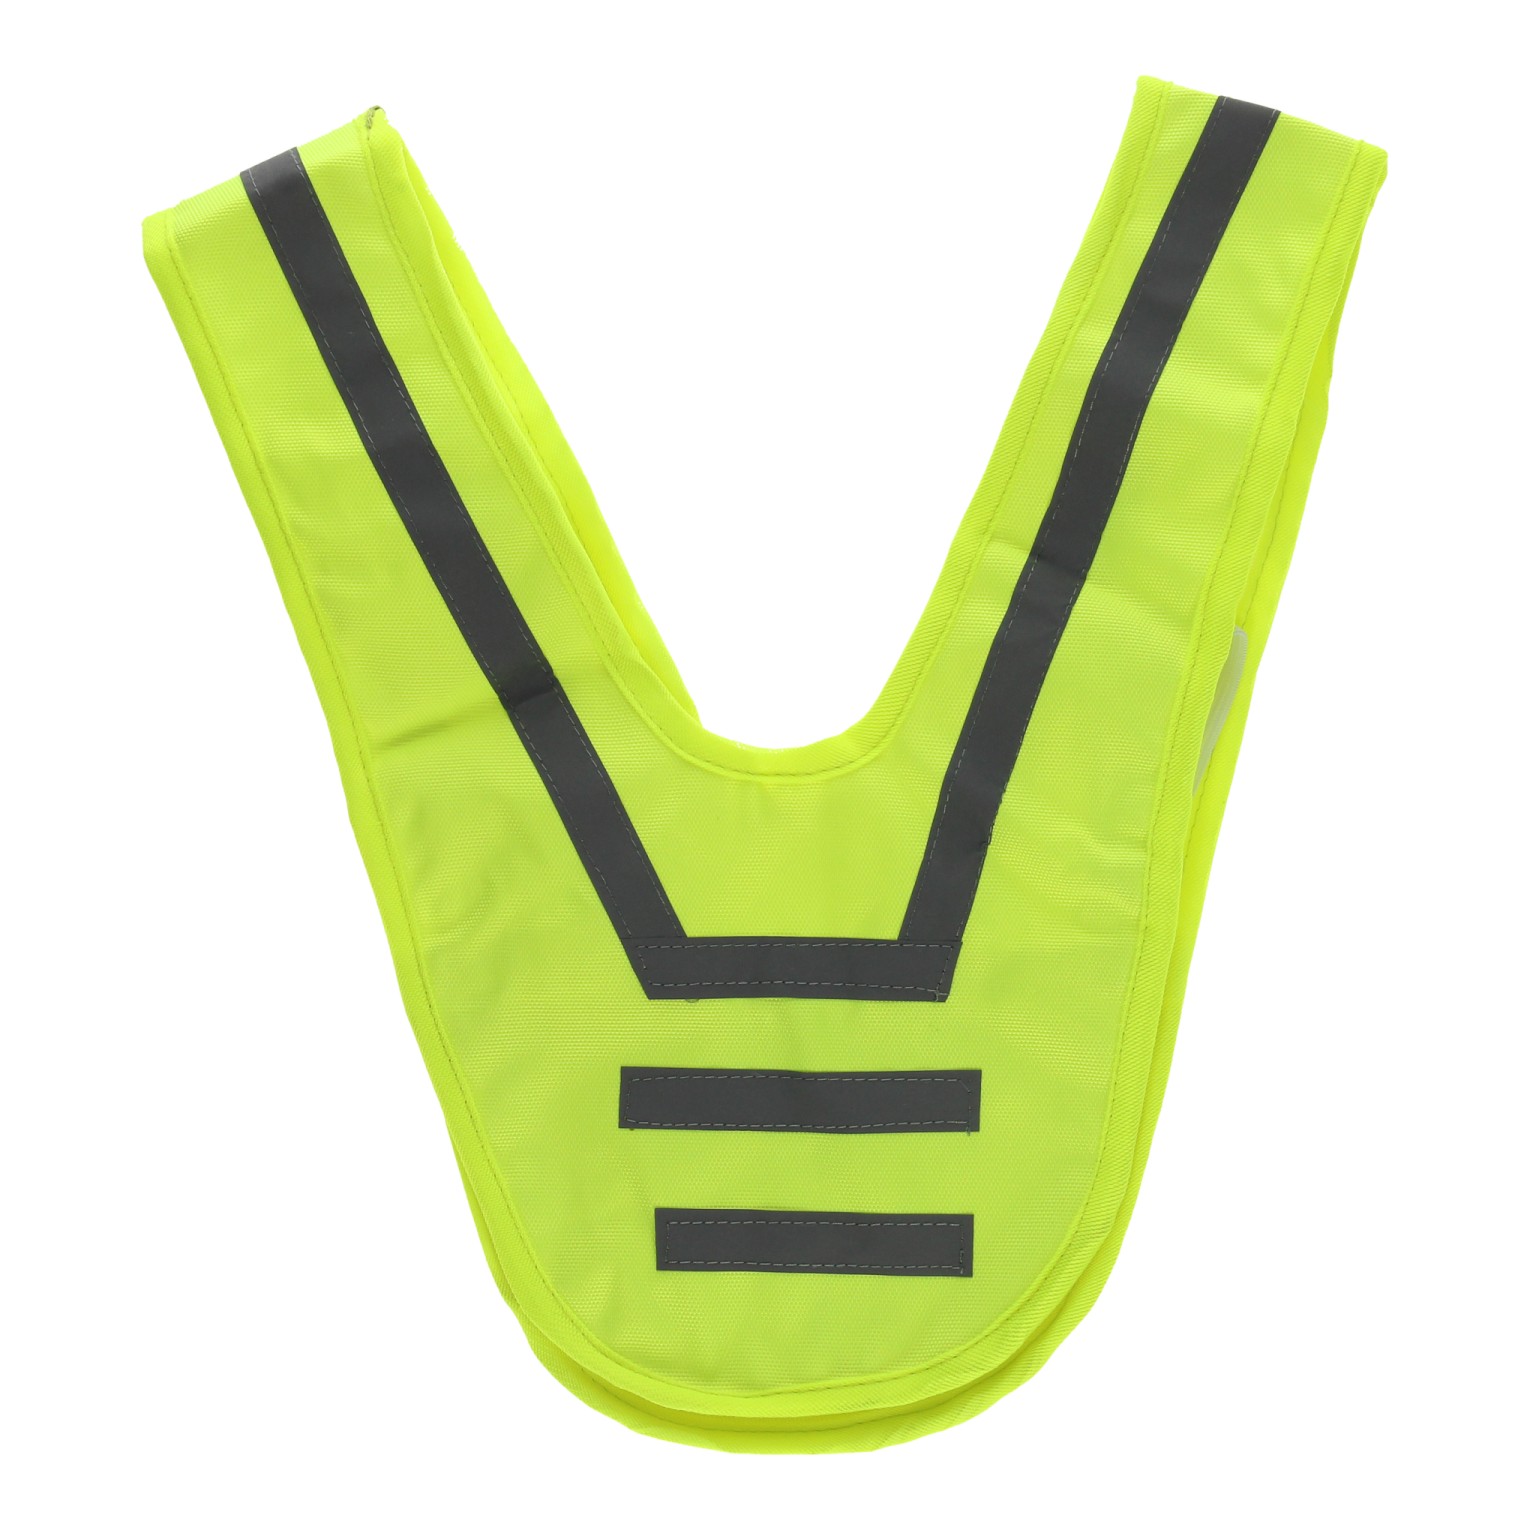 Dreiecksweste, Warnweste, Sicherheitsweste Größe M/L, gelb, mit  Reflexstreifen für Fahrrad, E-Bike, Skating, E-Roller, Jogging